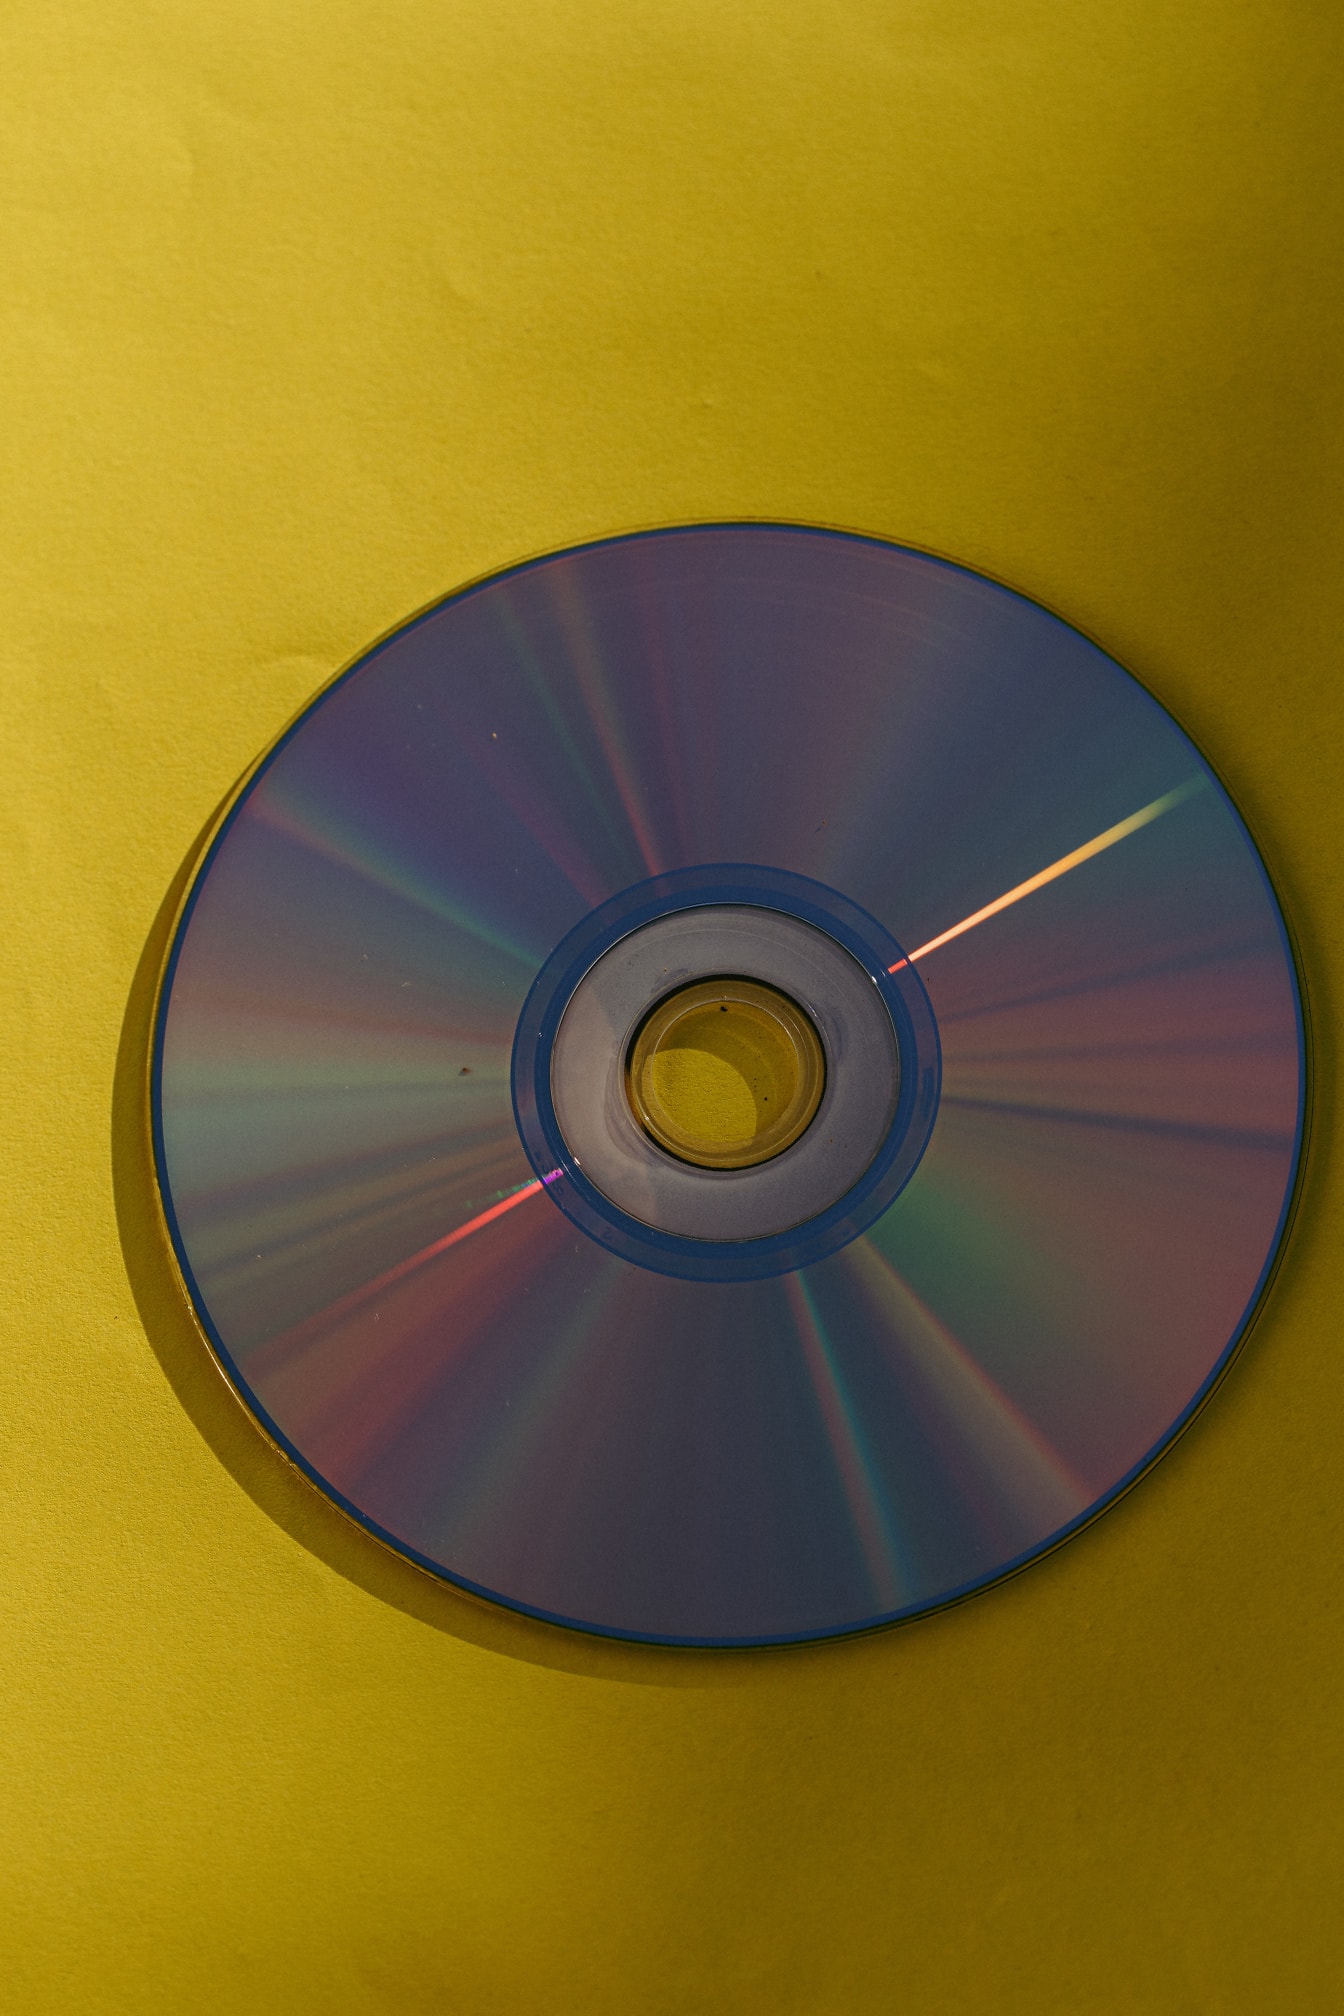 Disque DVD de sauvegarde avec reflet brillant sur papier jaune